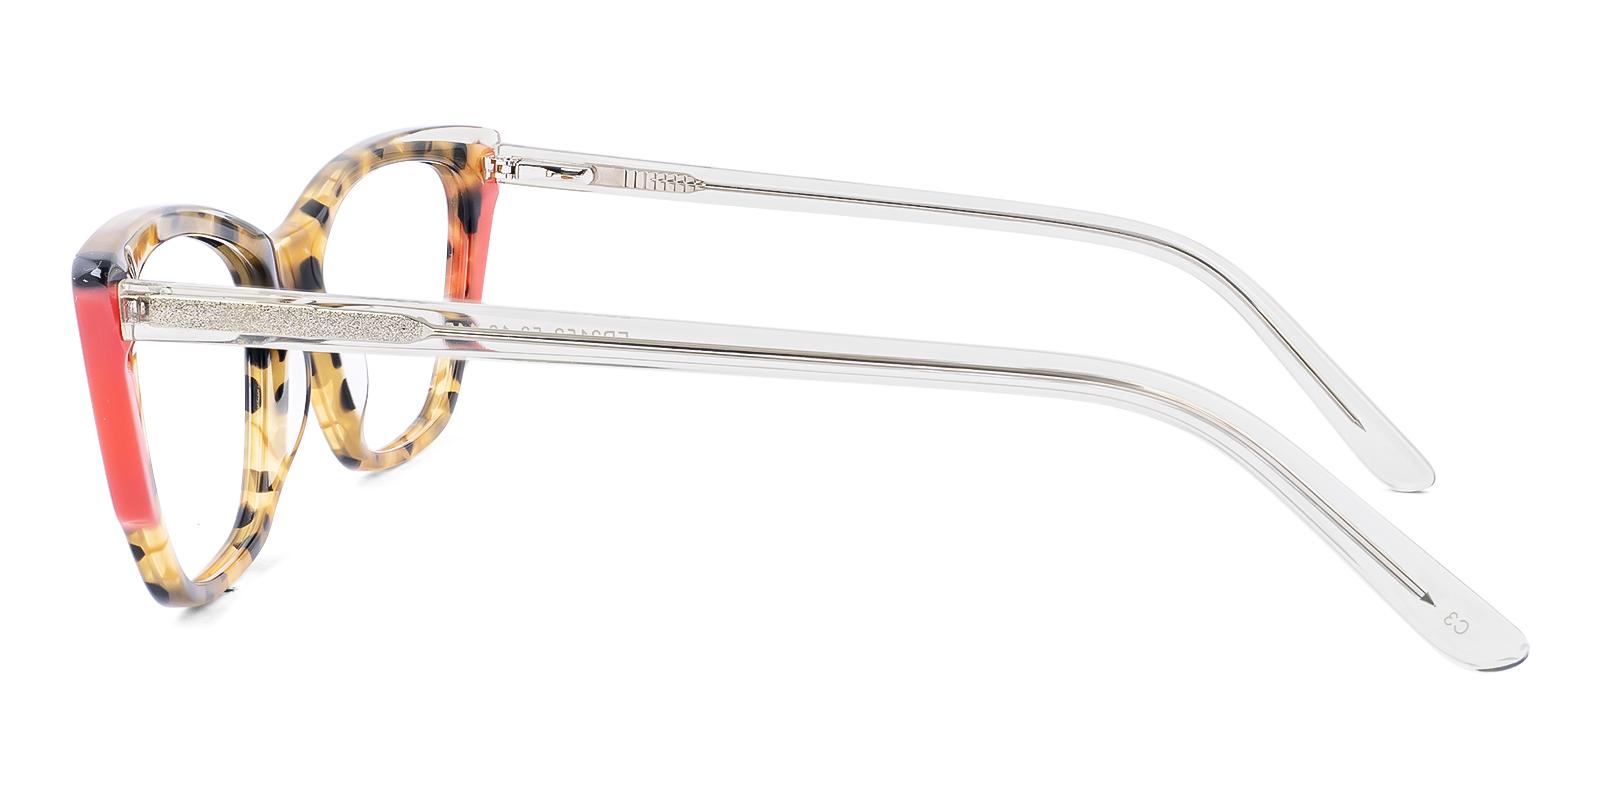 Dekamin Tortoise Acetate Eyeglasses , SpringHinges , UniversalBridgeFit Frames from ABBE Glasses